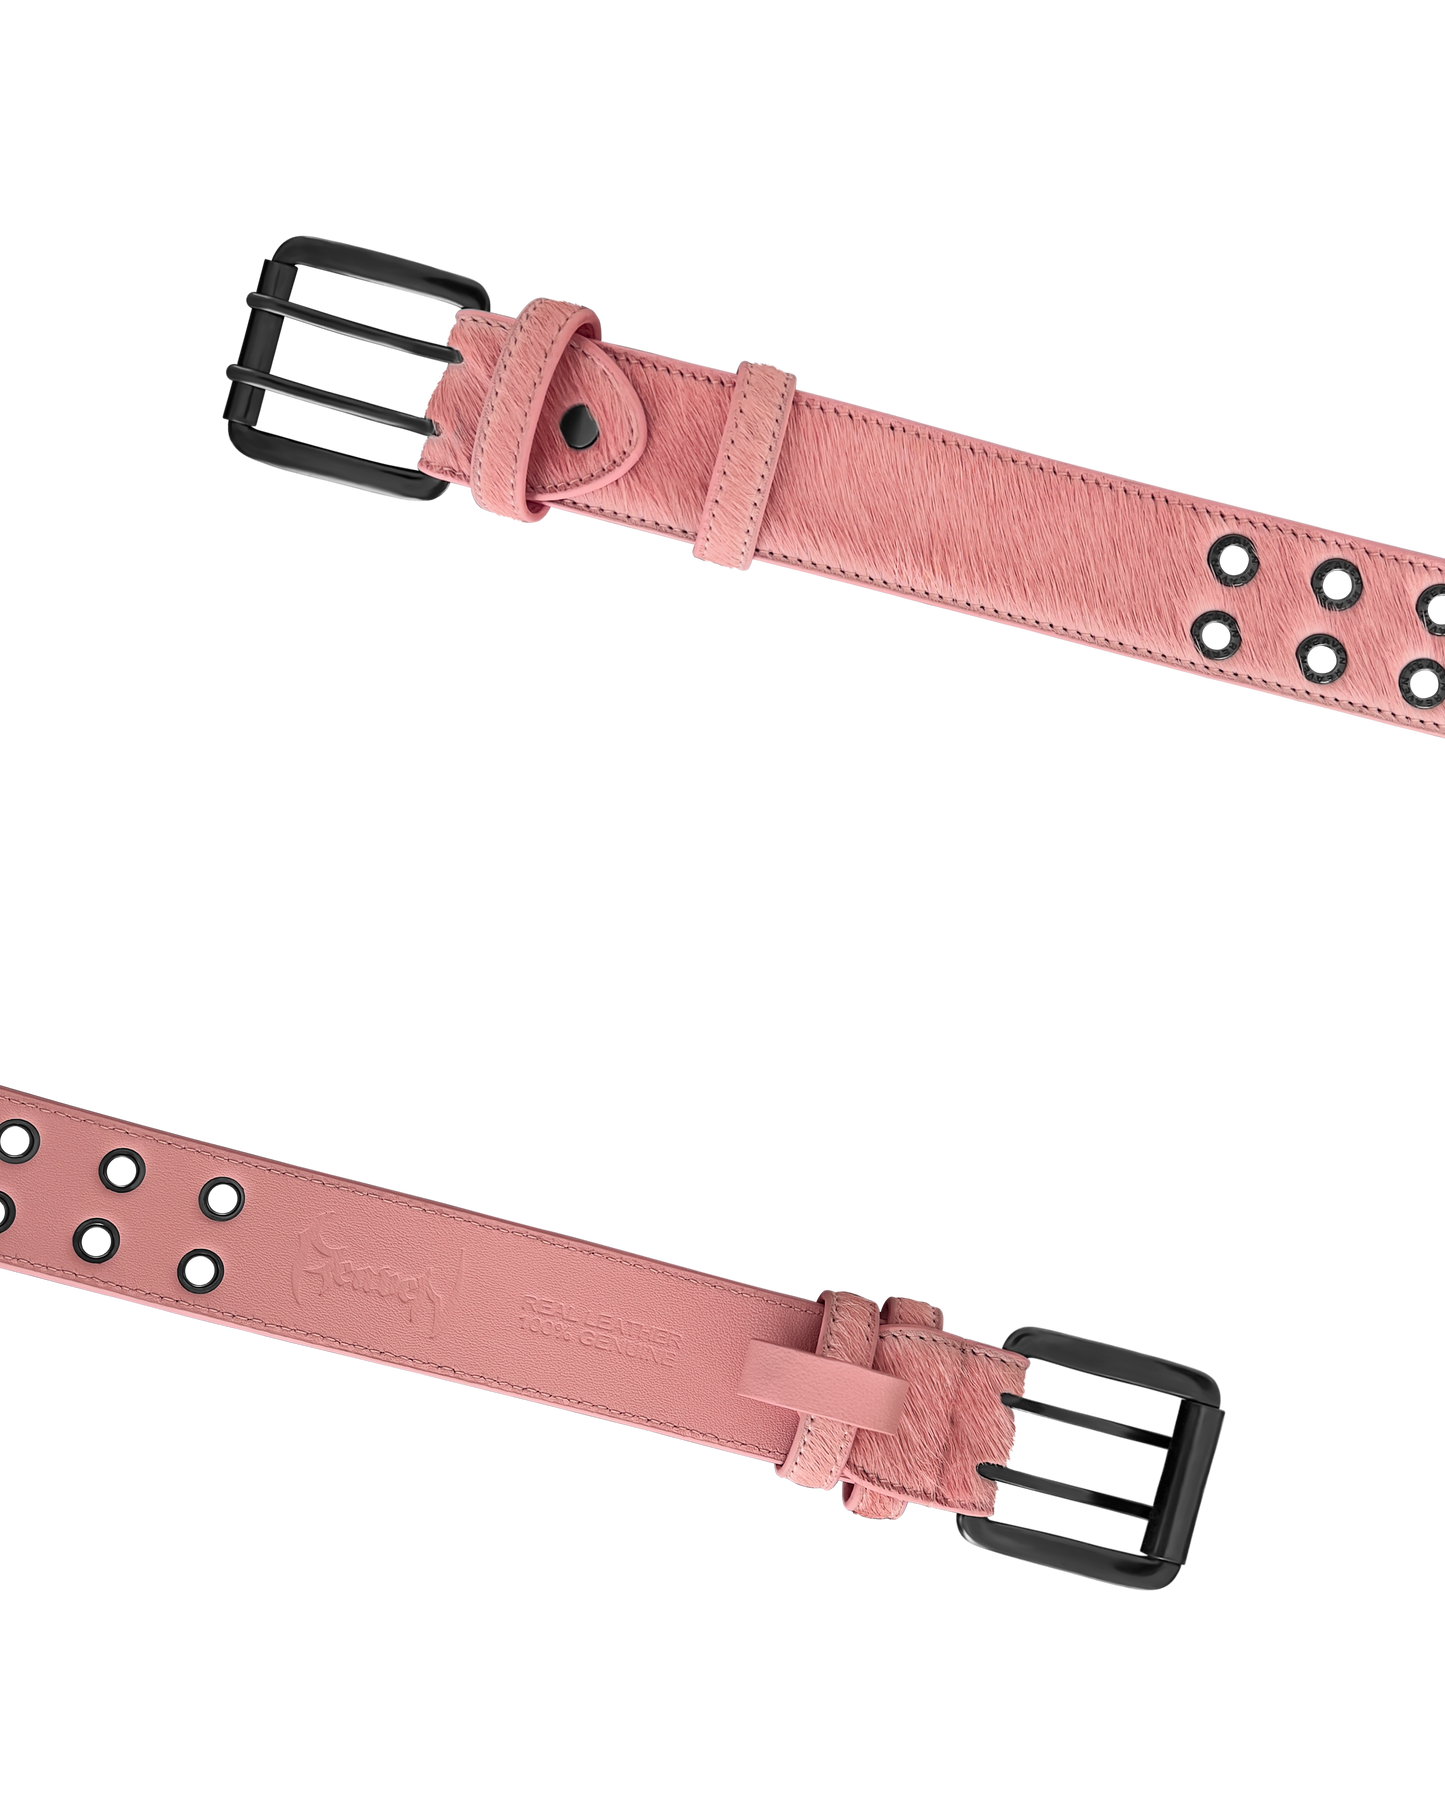 Reaven Pink Mohawk Belt